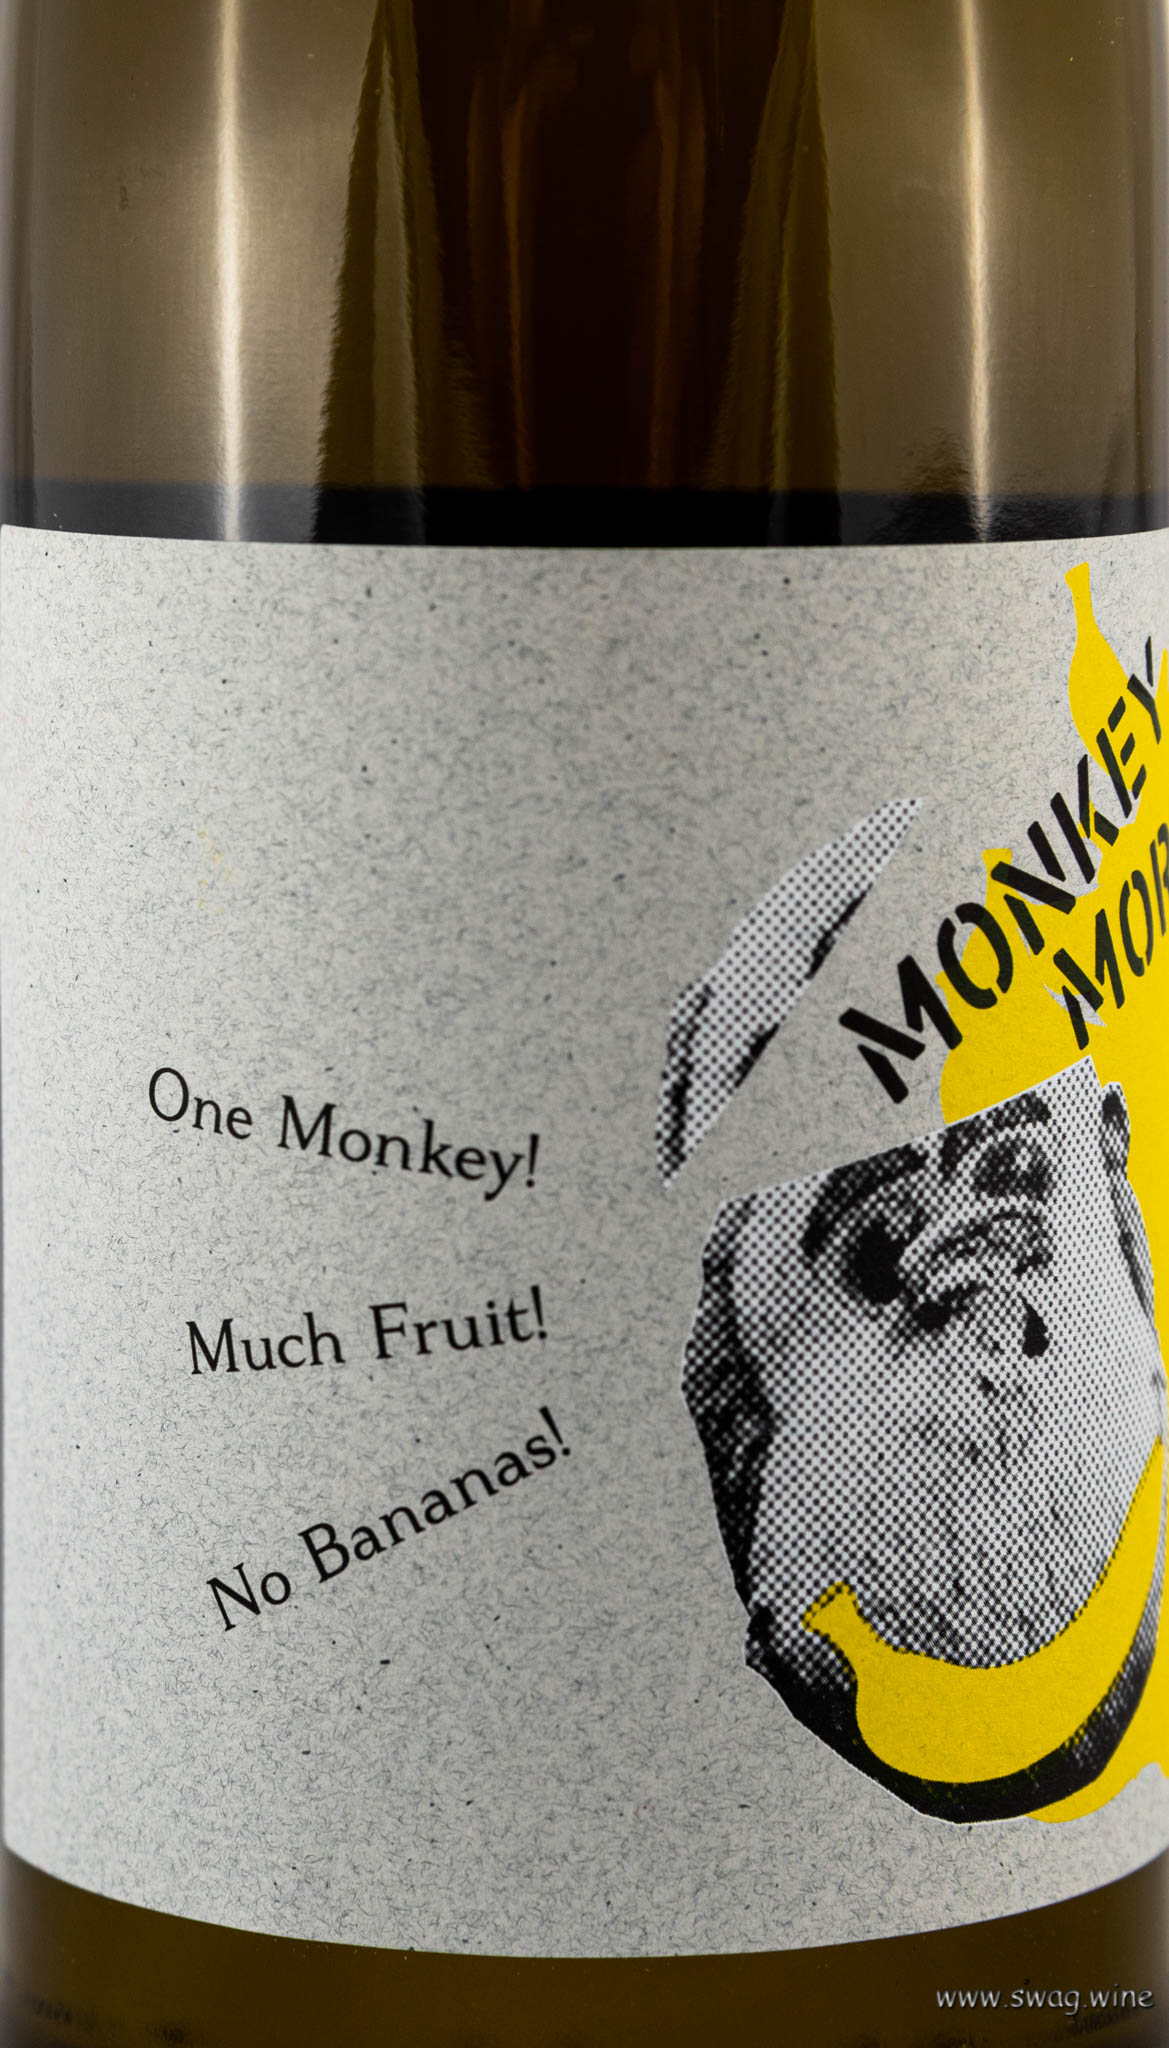 Monkey Morio No Bananas! Hanewald-Schwerdt Pfalz Wein Swagwine